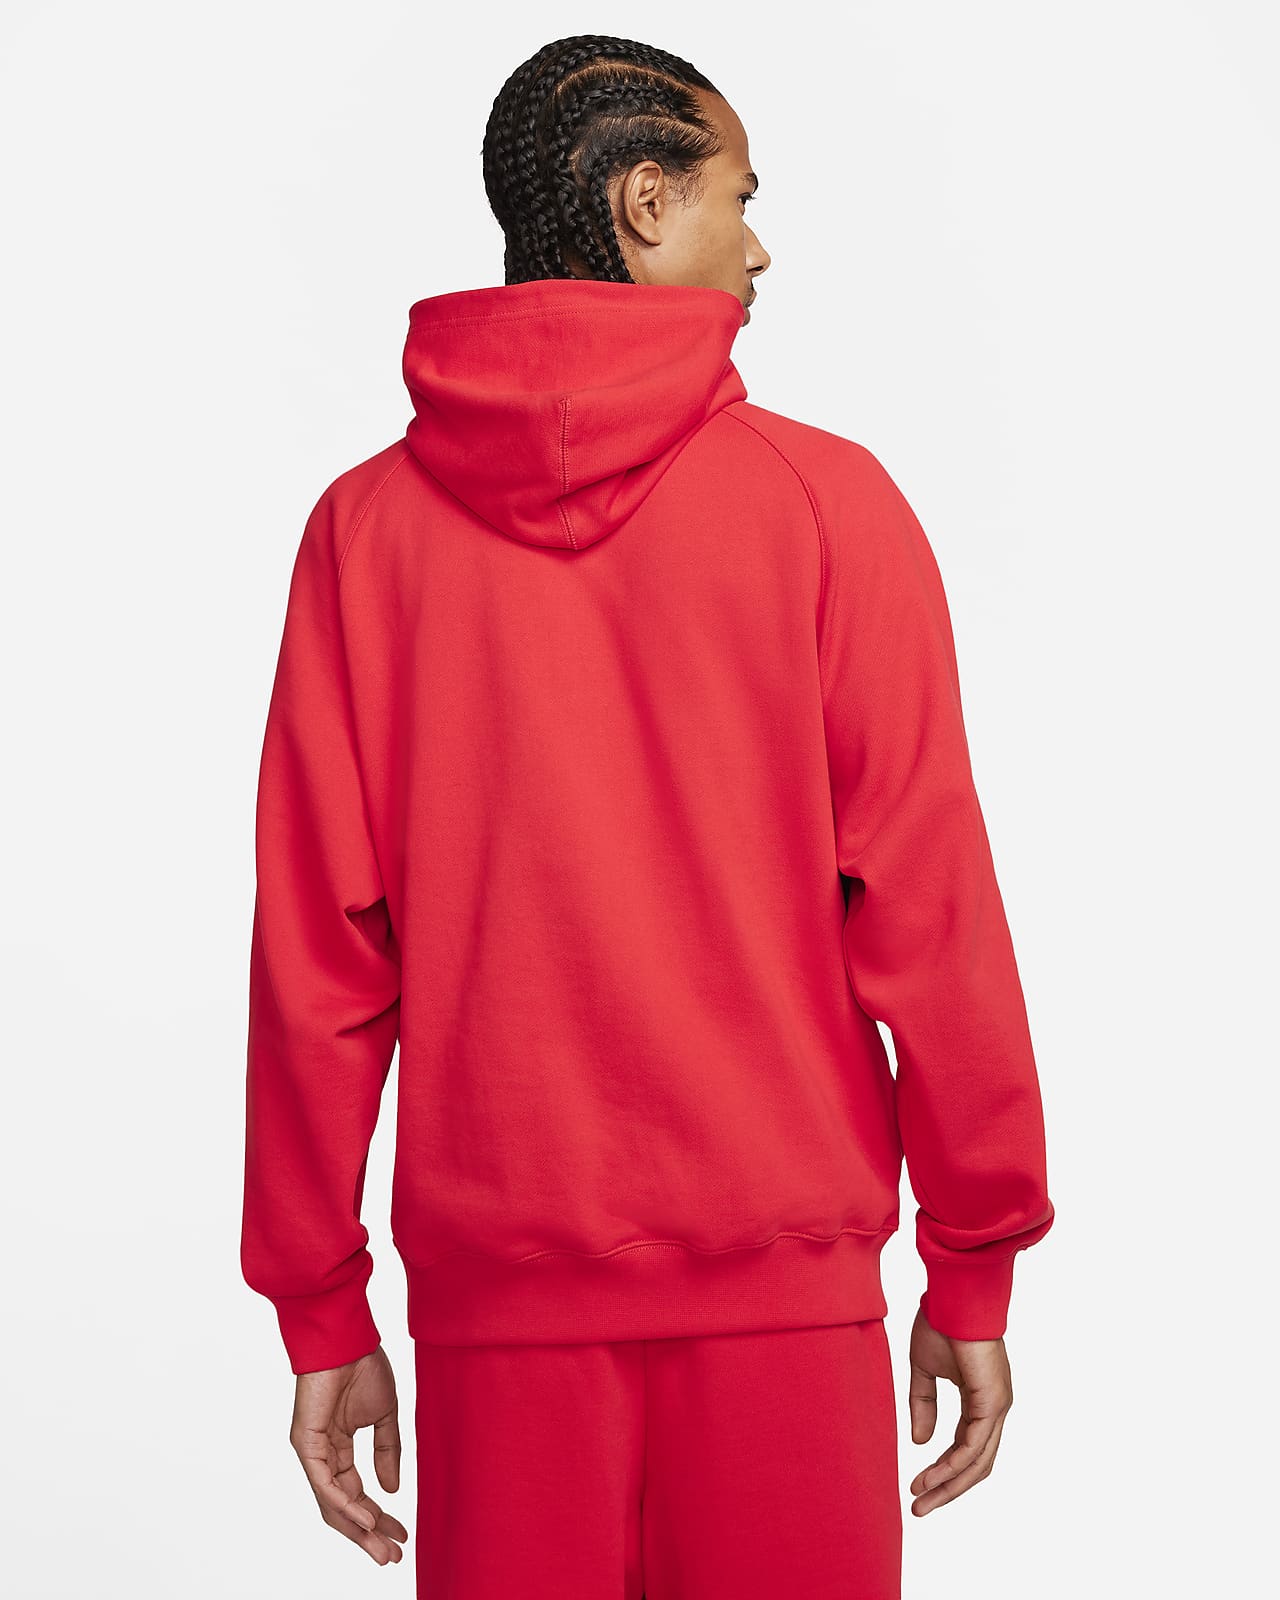 Nike men's swoosh club sweatshirts hoodie zip up hooded top sports